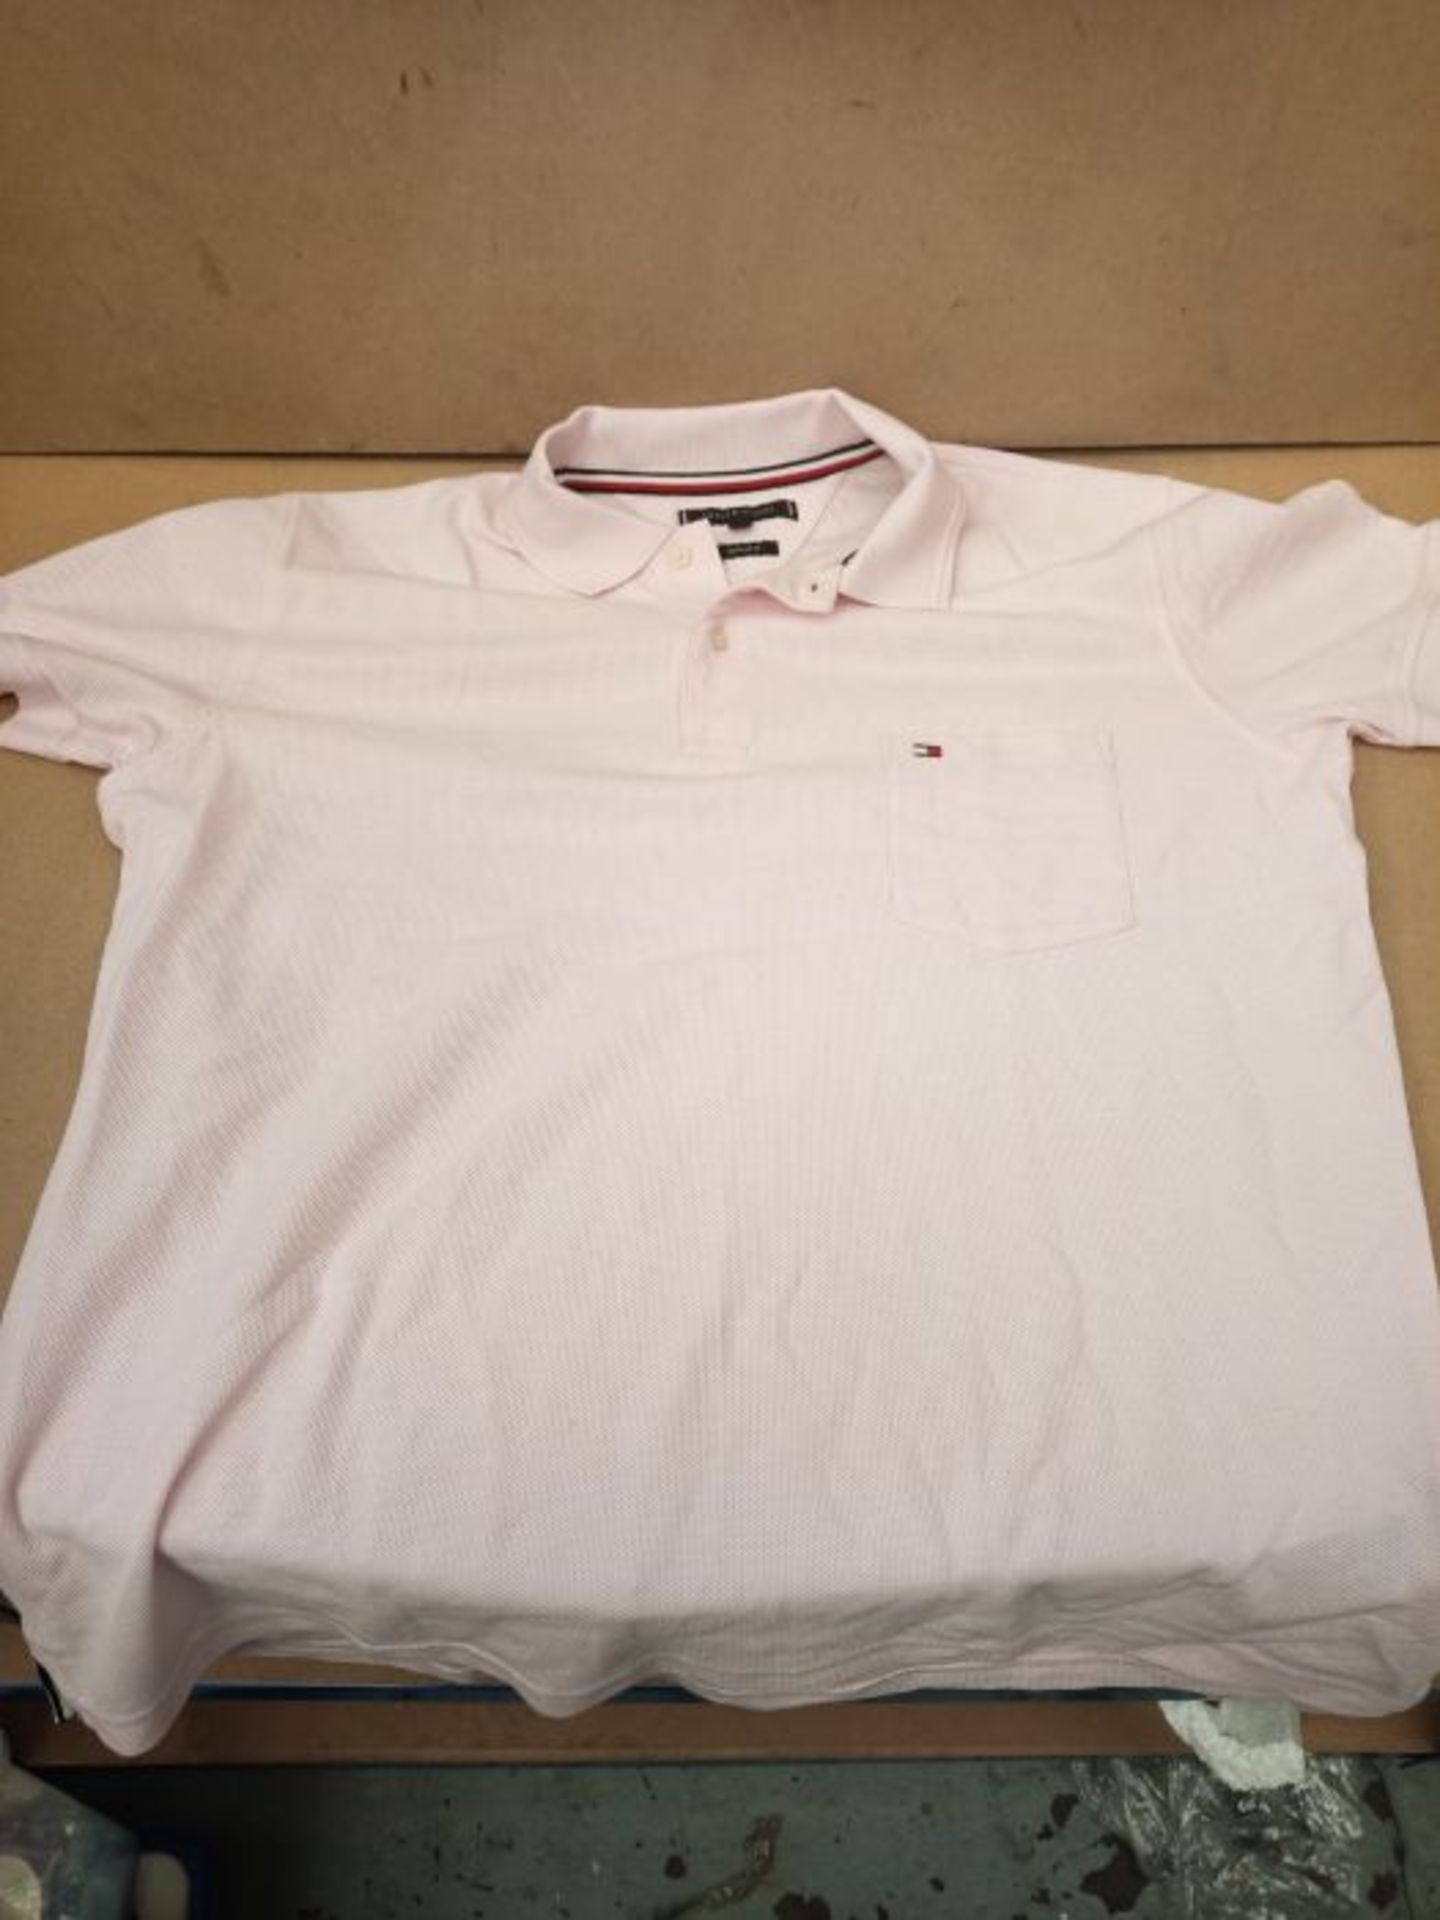 Tommy Hilfiger Men's Structured Pocket Regular Polo Shirt, Light Pink, M - Image 3 of 3